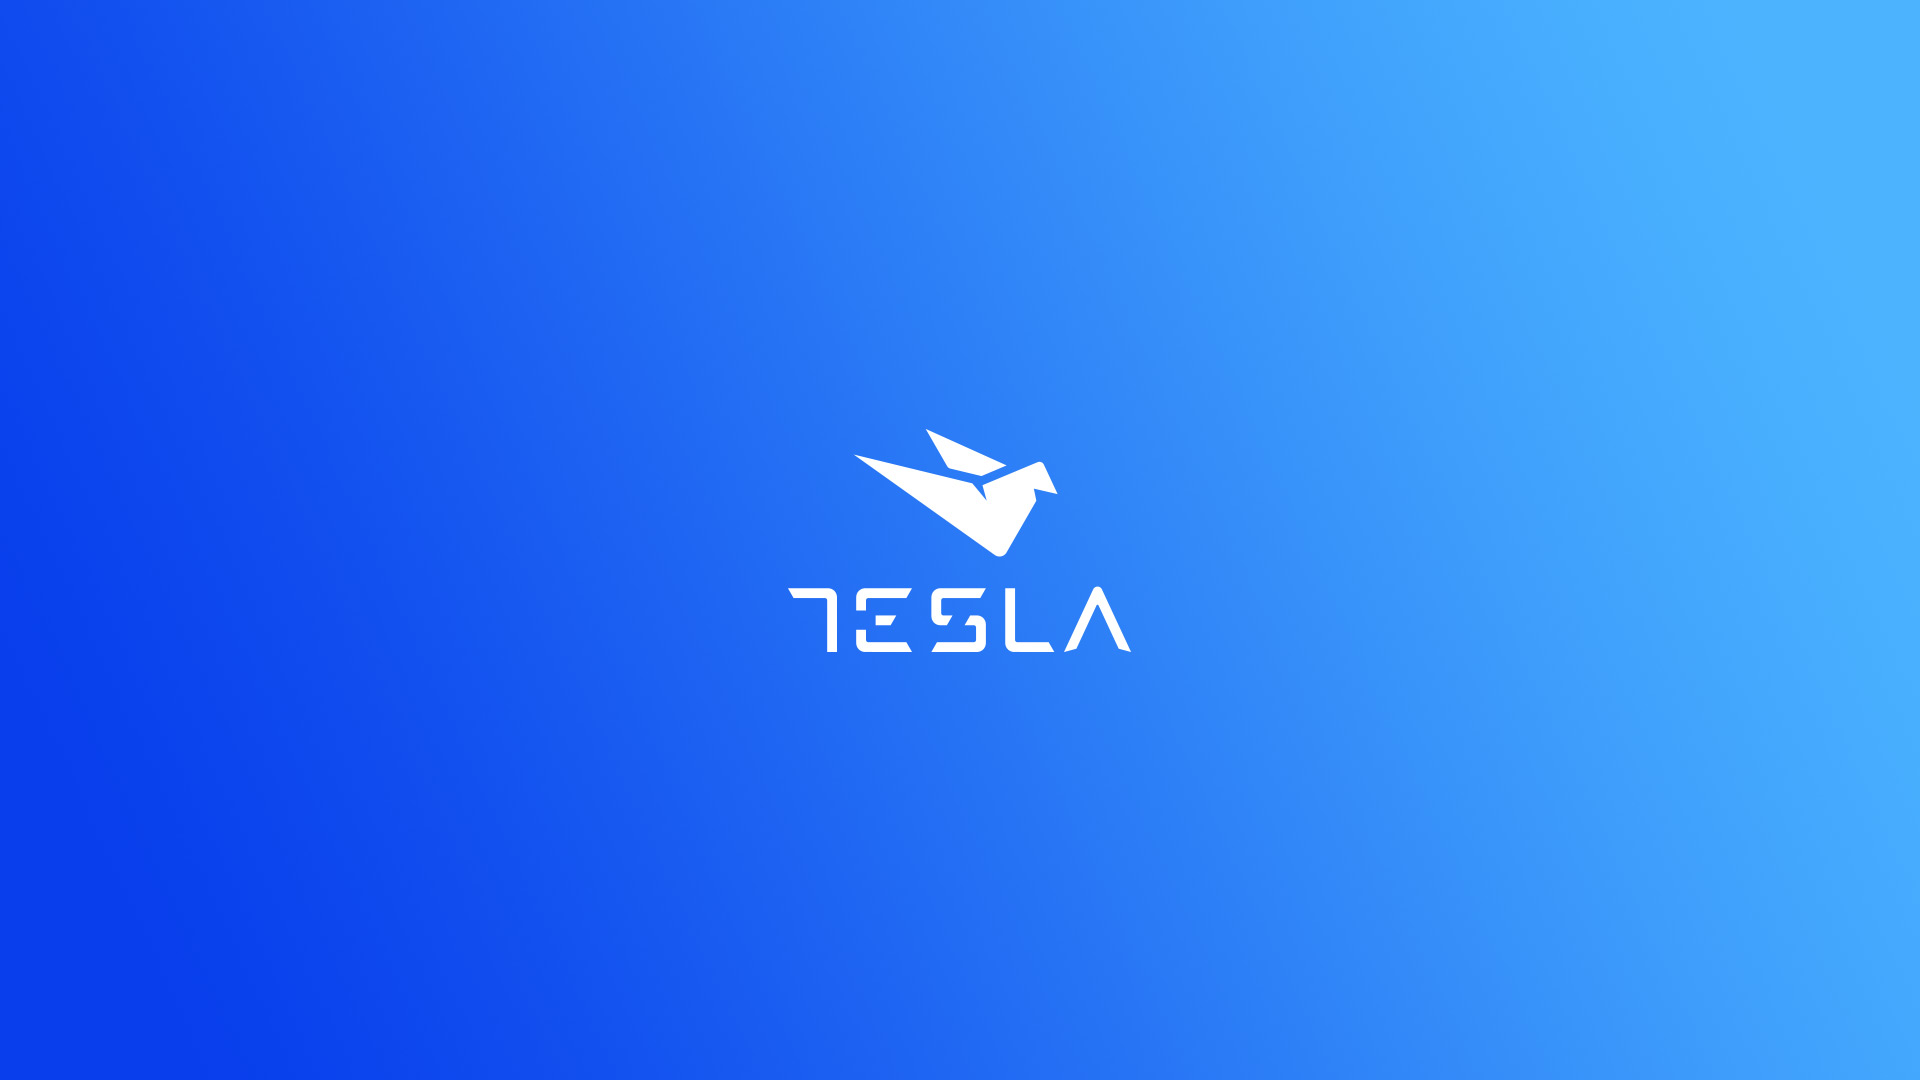 Tesla visual identity - logotype on blue